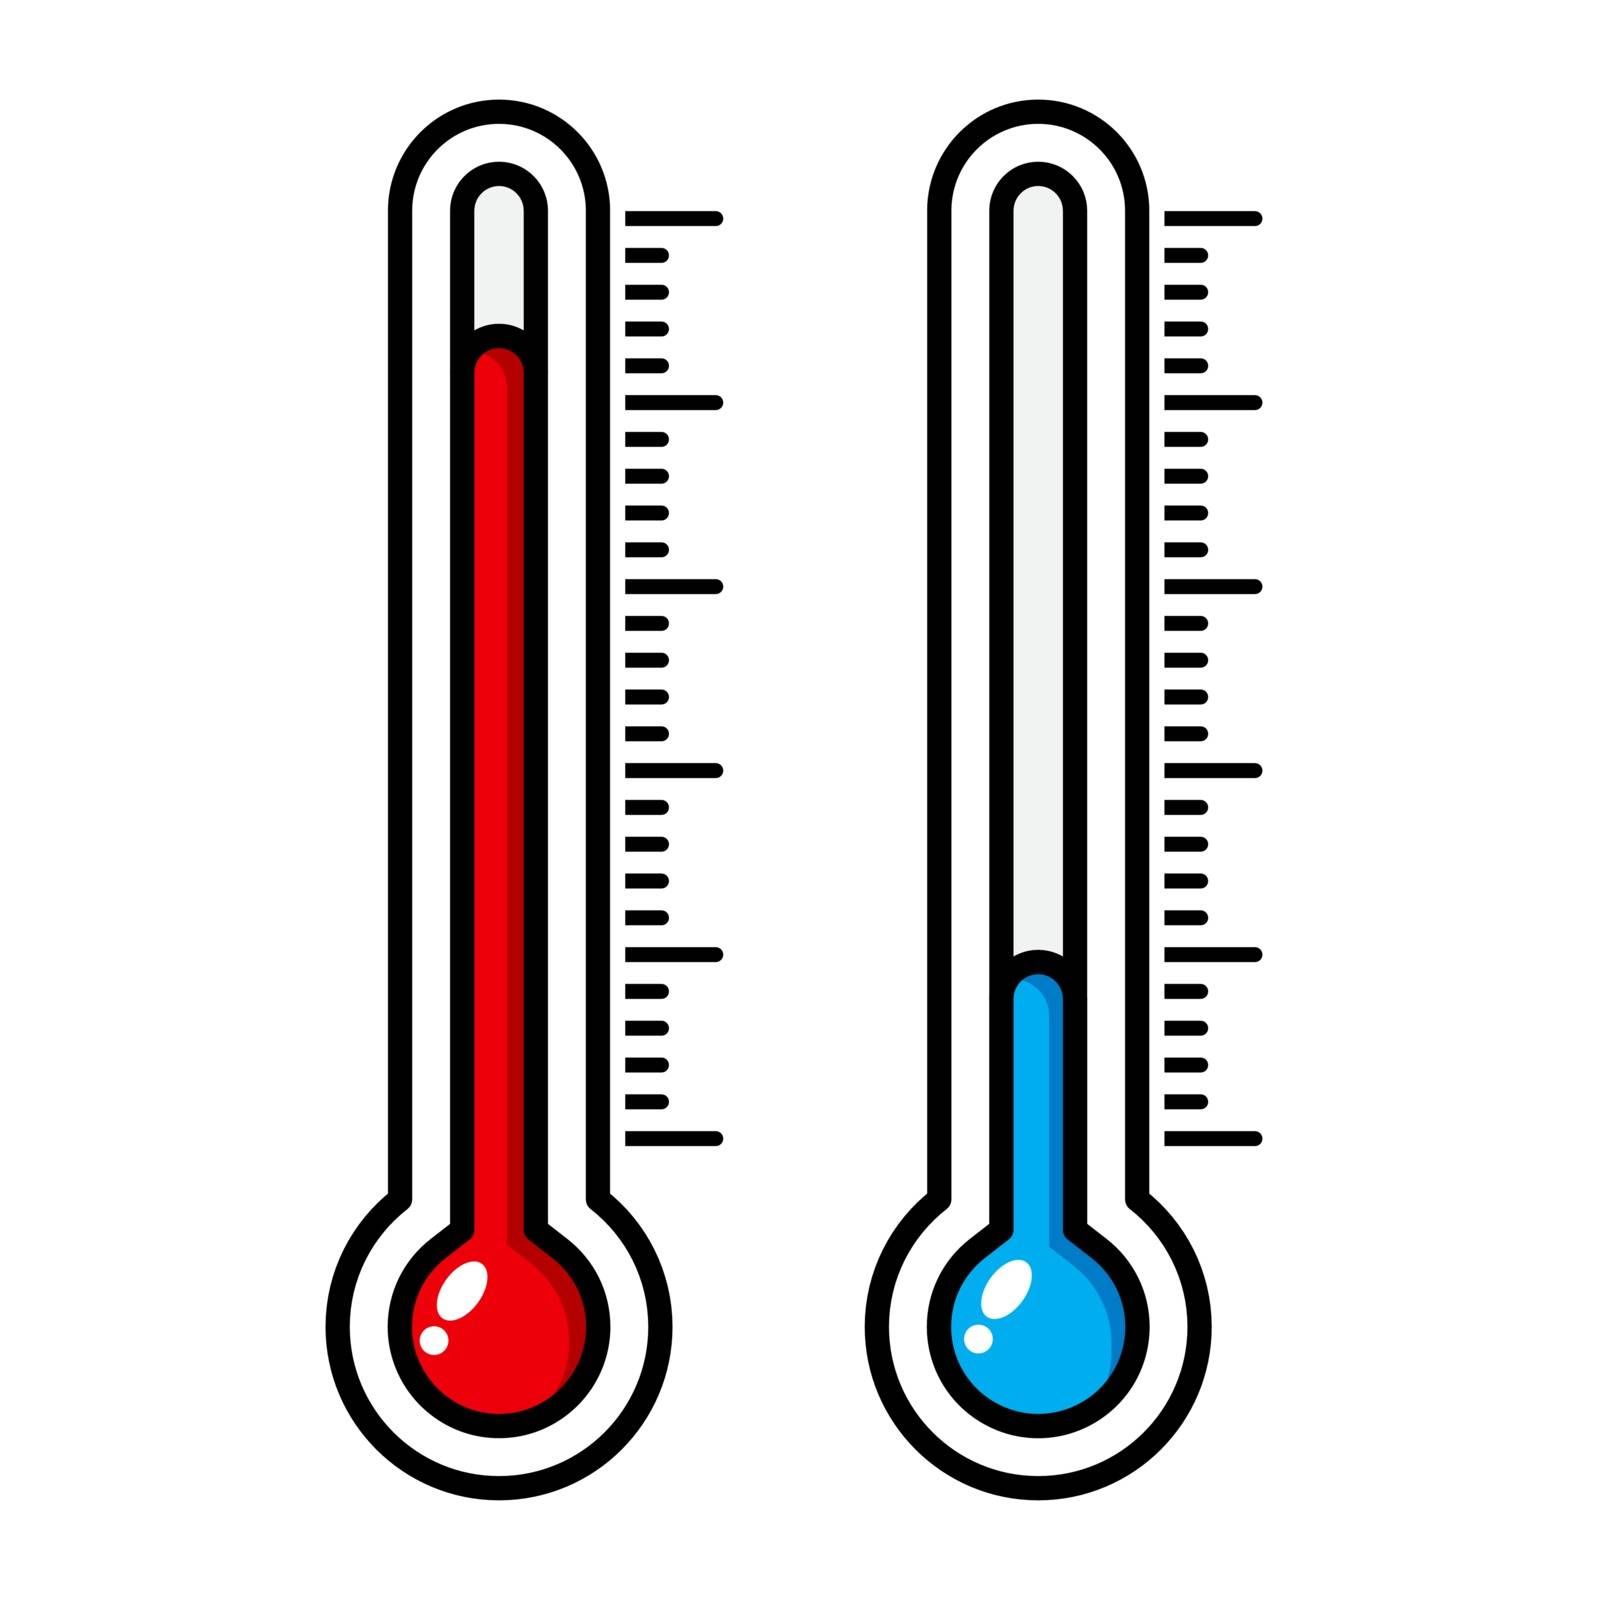 Thermometer cartoon illustration isolated on white. Meteorology  by wektorygrafika